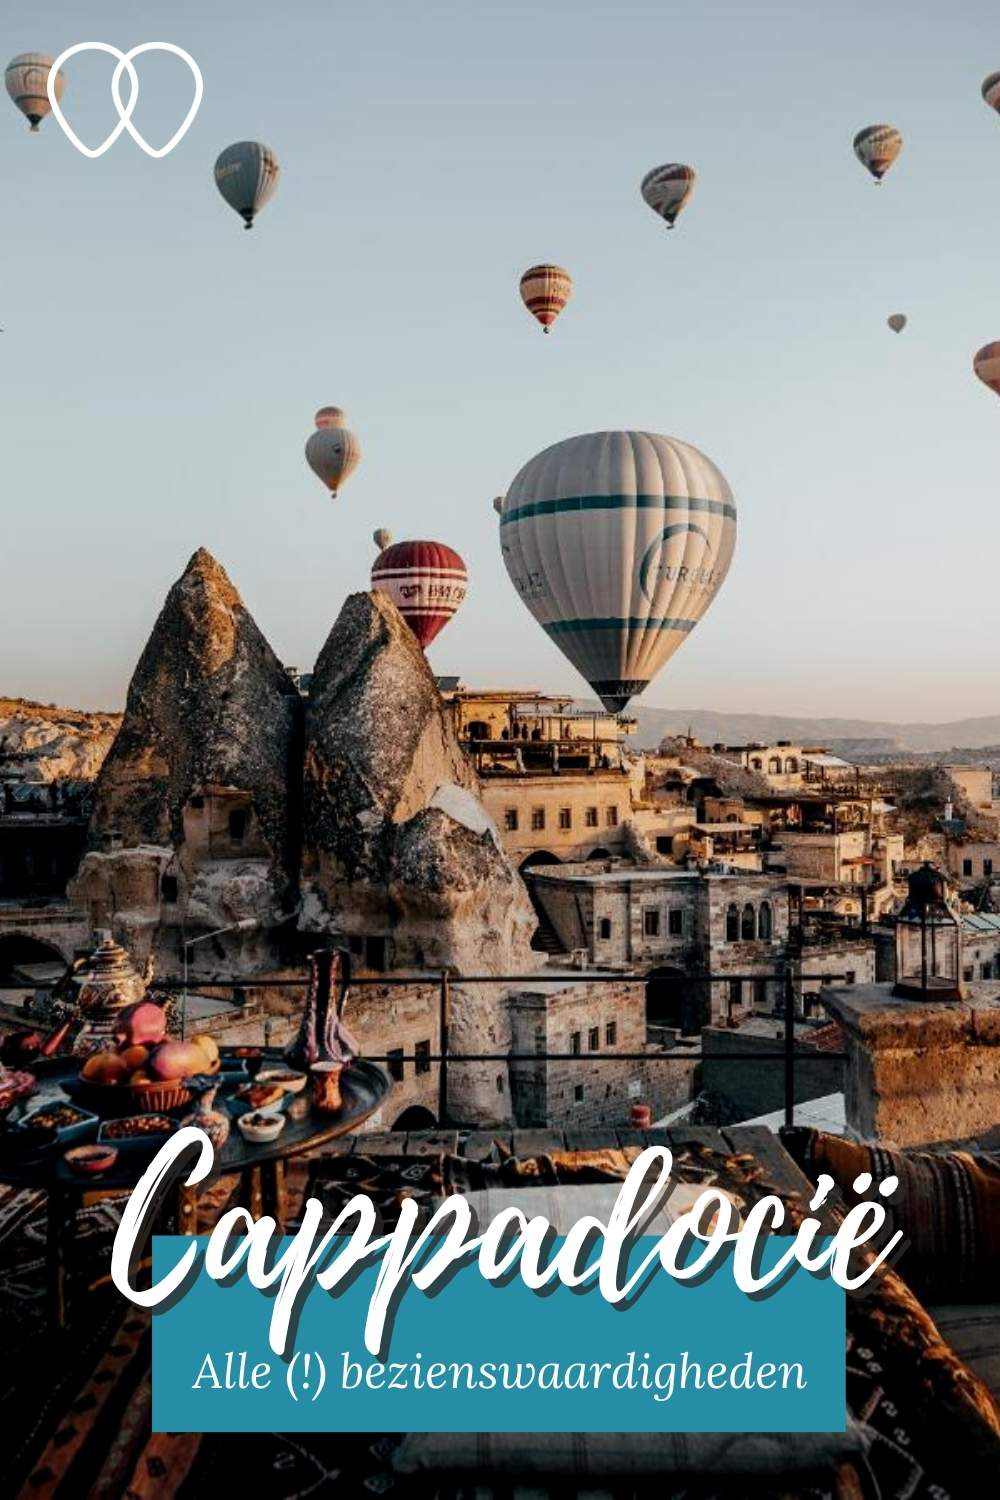 Cappadocië, Turkije: ballonvaart Cappadocië & alle leuke Cappadocië bezienswaardigheden. Bekijk de tips | Mooistestedentrips.nl